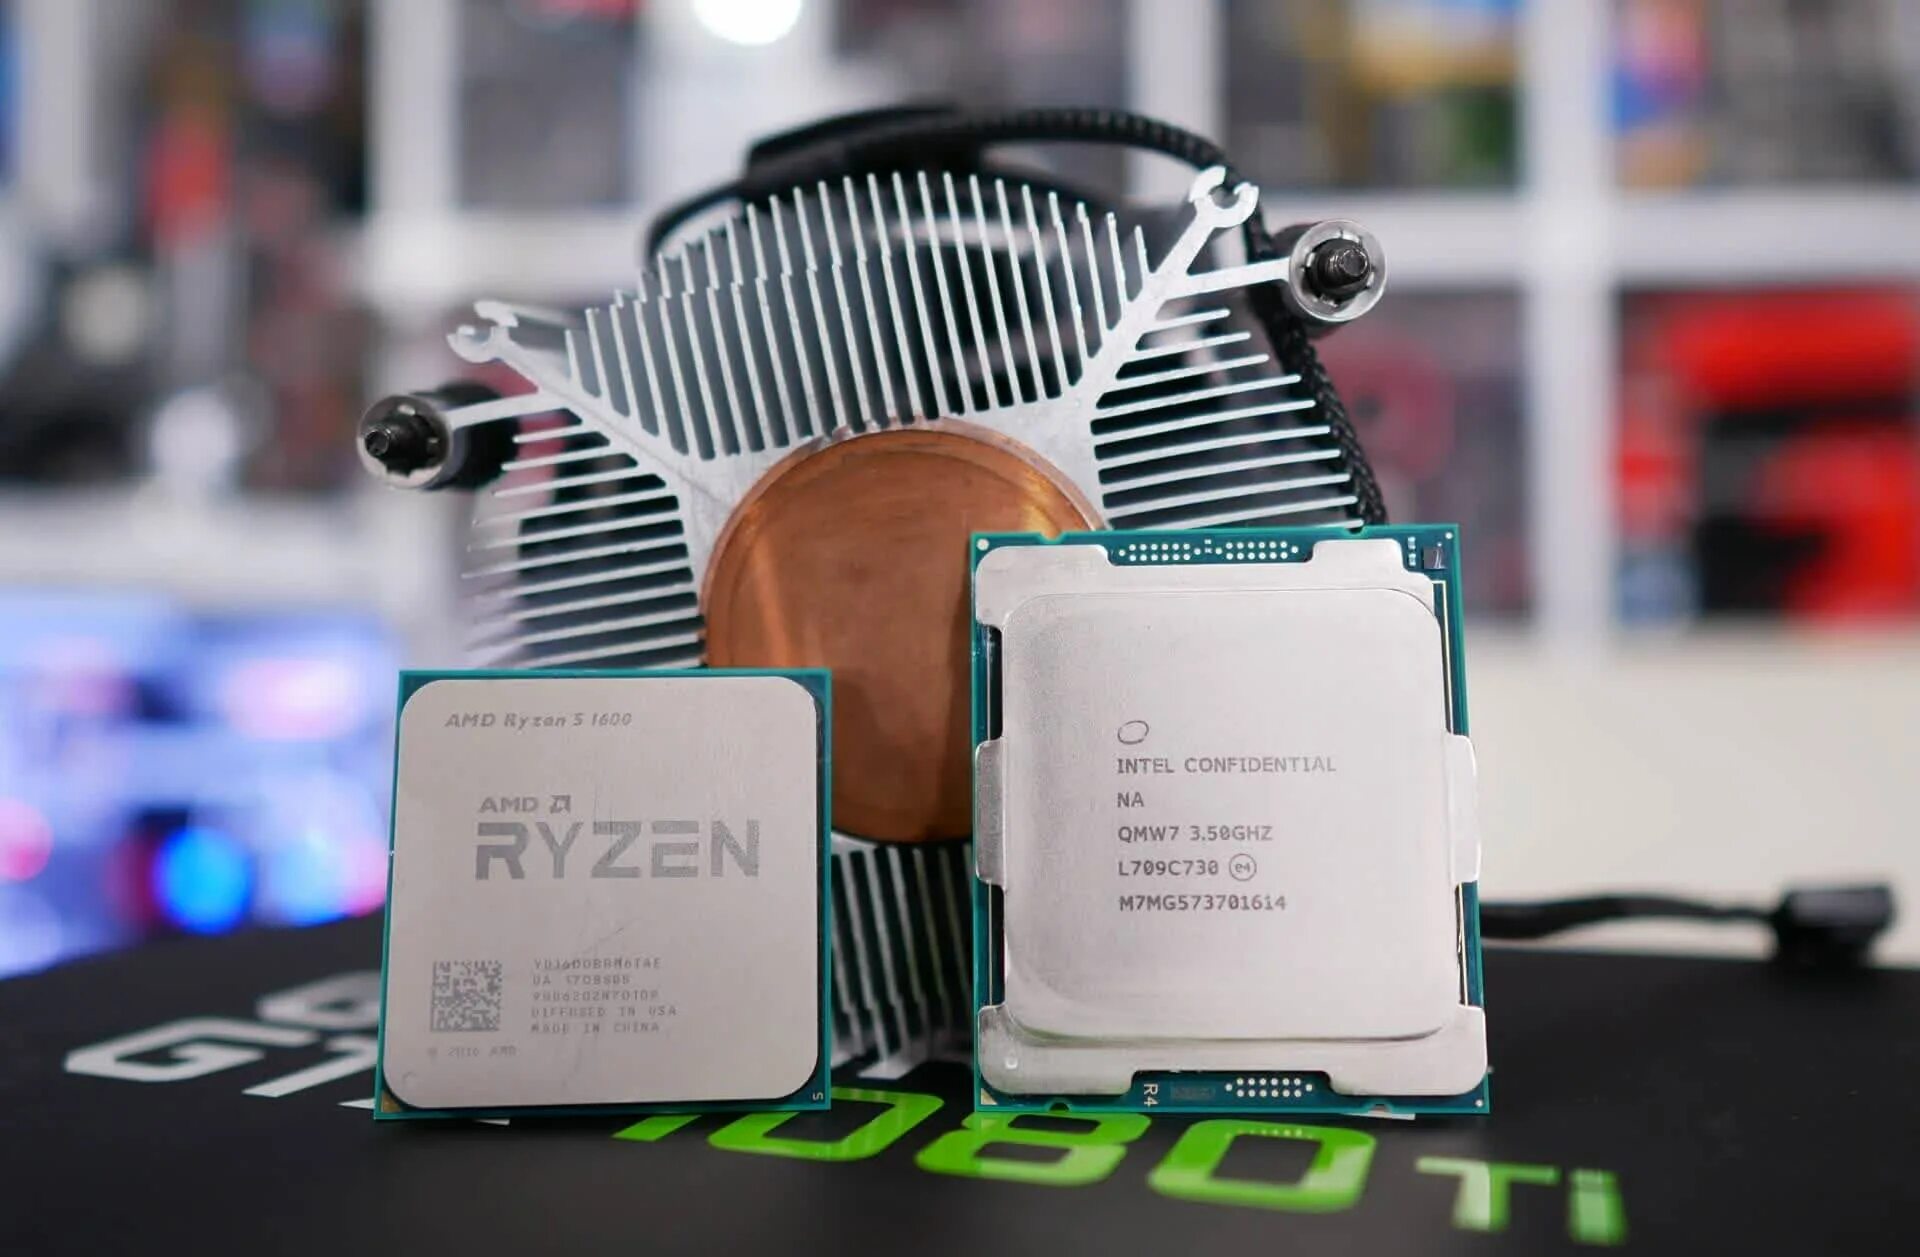 5 1600 купить. Ryzen 7 1600. AMD Ryzen 5 1600. Ryzen 7 7800x. Ryzen 5 7800x.